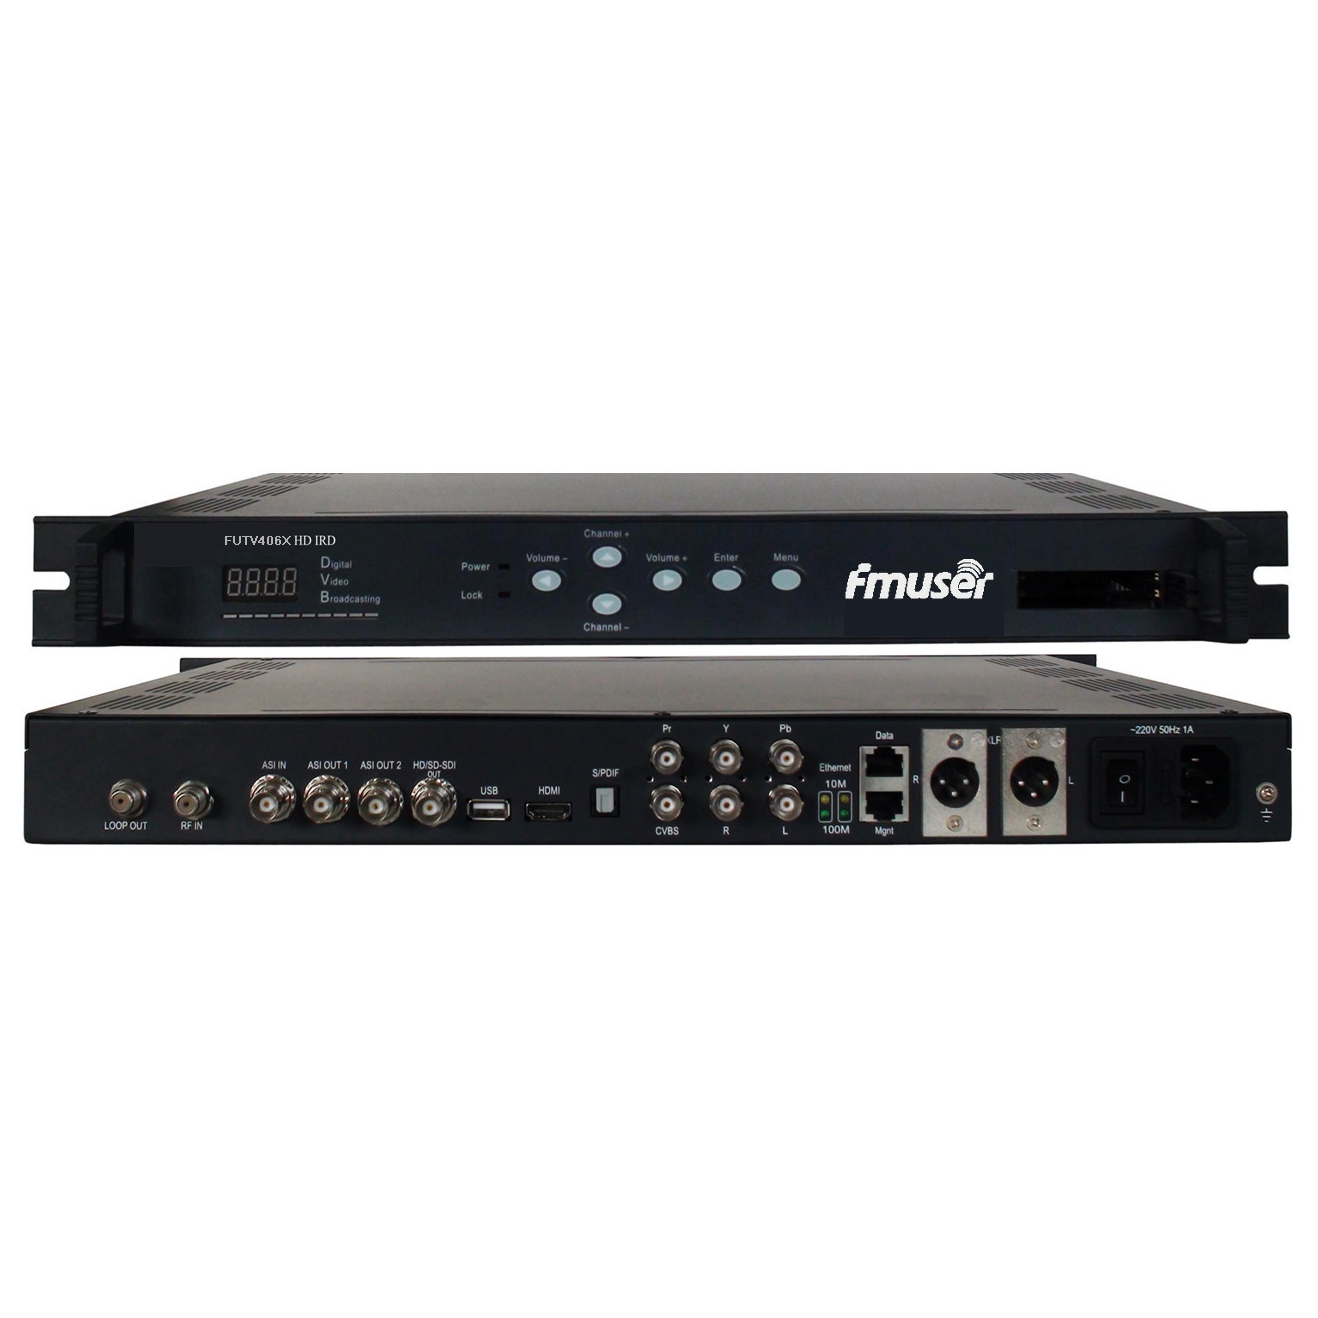 FMUSER FUTV406X HD IRD (1 DVB-S / S2 / T / C, Entrada ISDB-T RF, 1 ASI IP In, saída 2 1 ASI IP, HDMI SDI CVBS XLR Out) con MUX e BISS